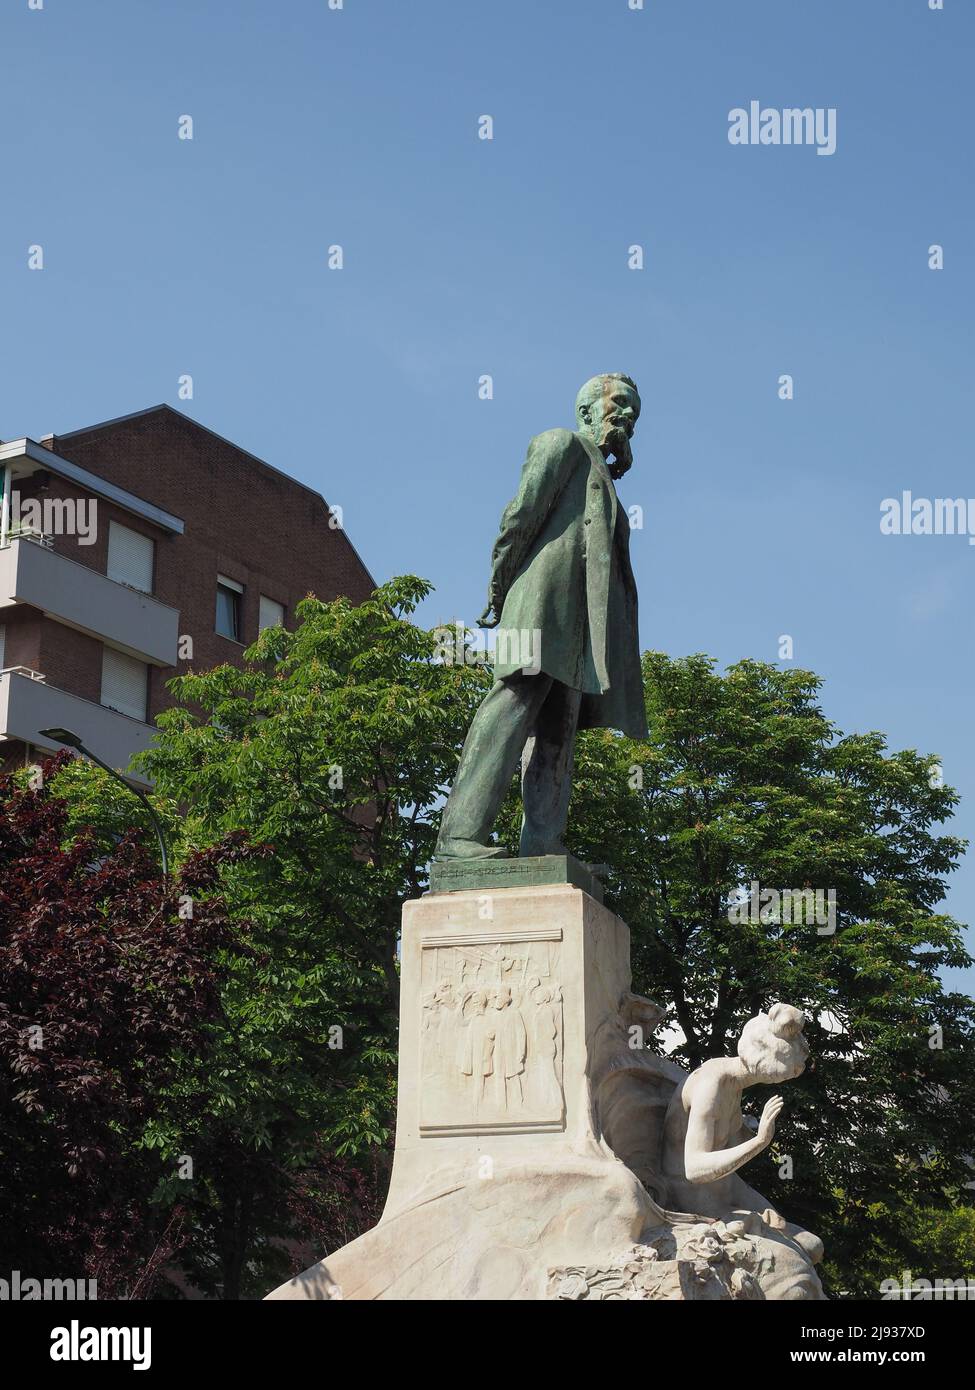 Monumento allo scienziato italiano Galileo Ferraris circa nel 1903 dello scultore Luigi Contratti di Torino Foto Stock